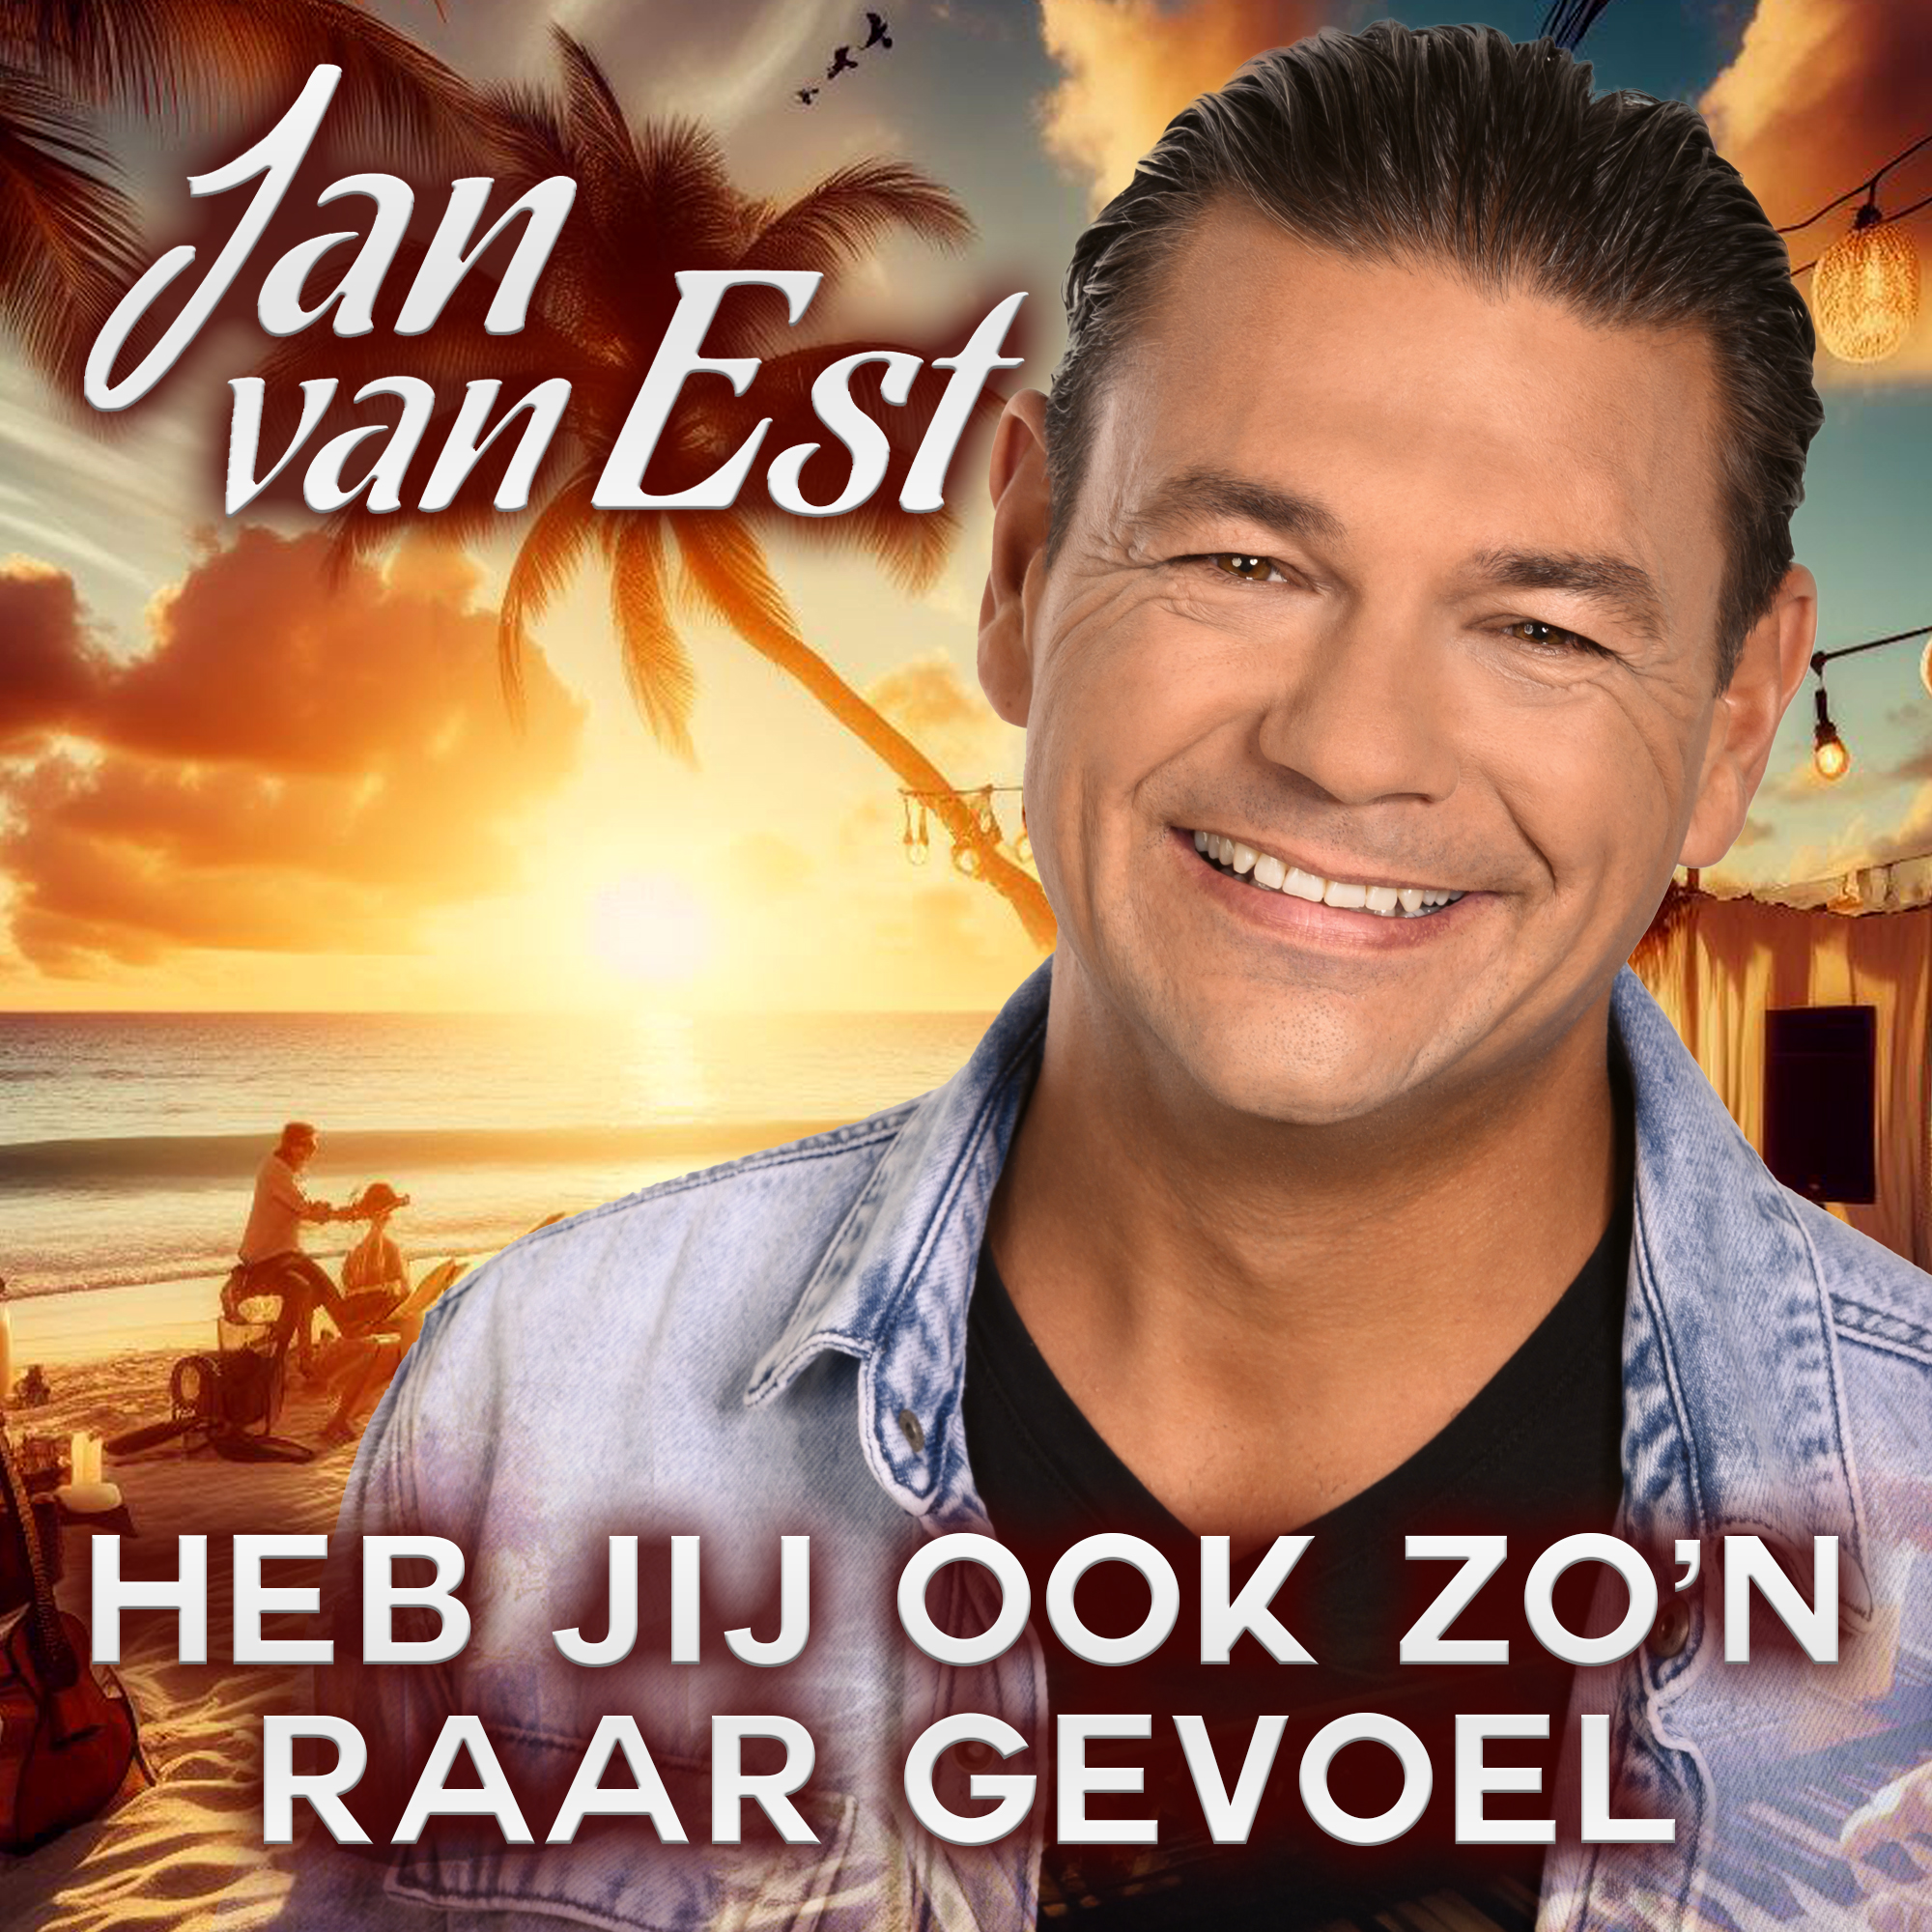 Jan van Est – Heb jij ook zo’n raar gevoel – Week 9